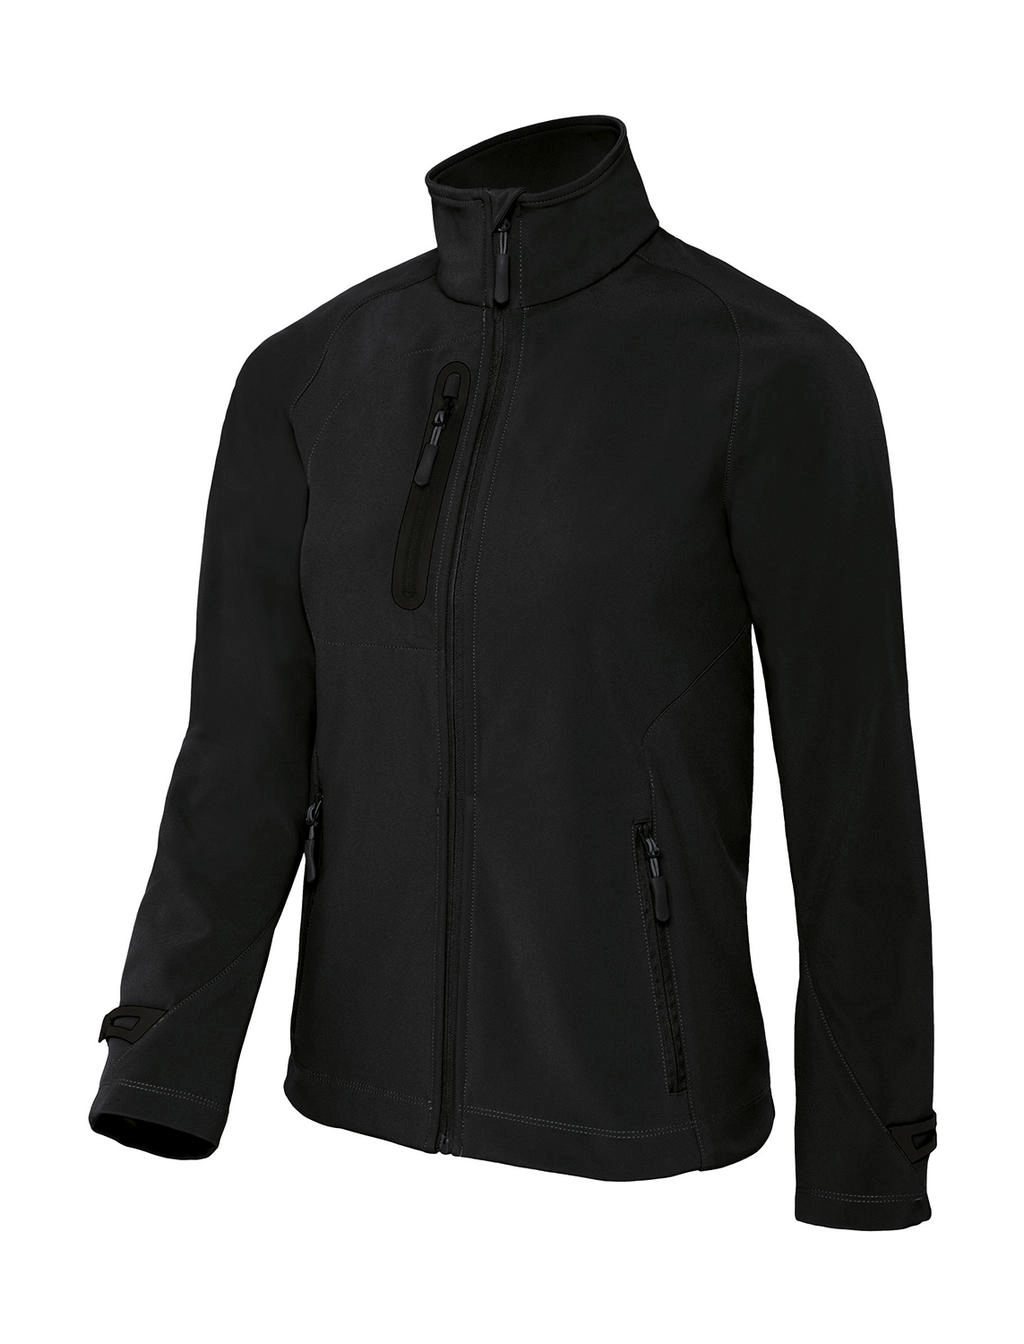 X-Lite Softshell/women Jacket zum Besticken und Bedrucken in der Farbe Black mit Ihren Logo, Schriftzug oder Motiv.